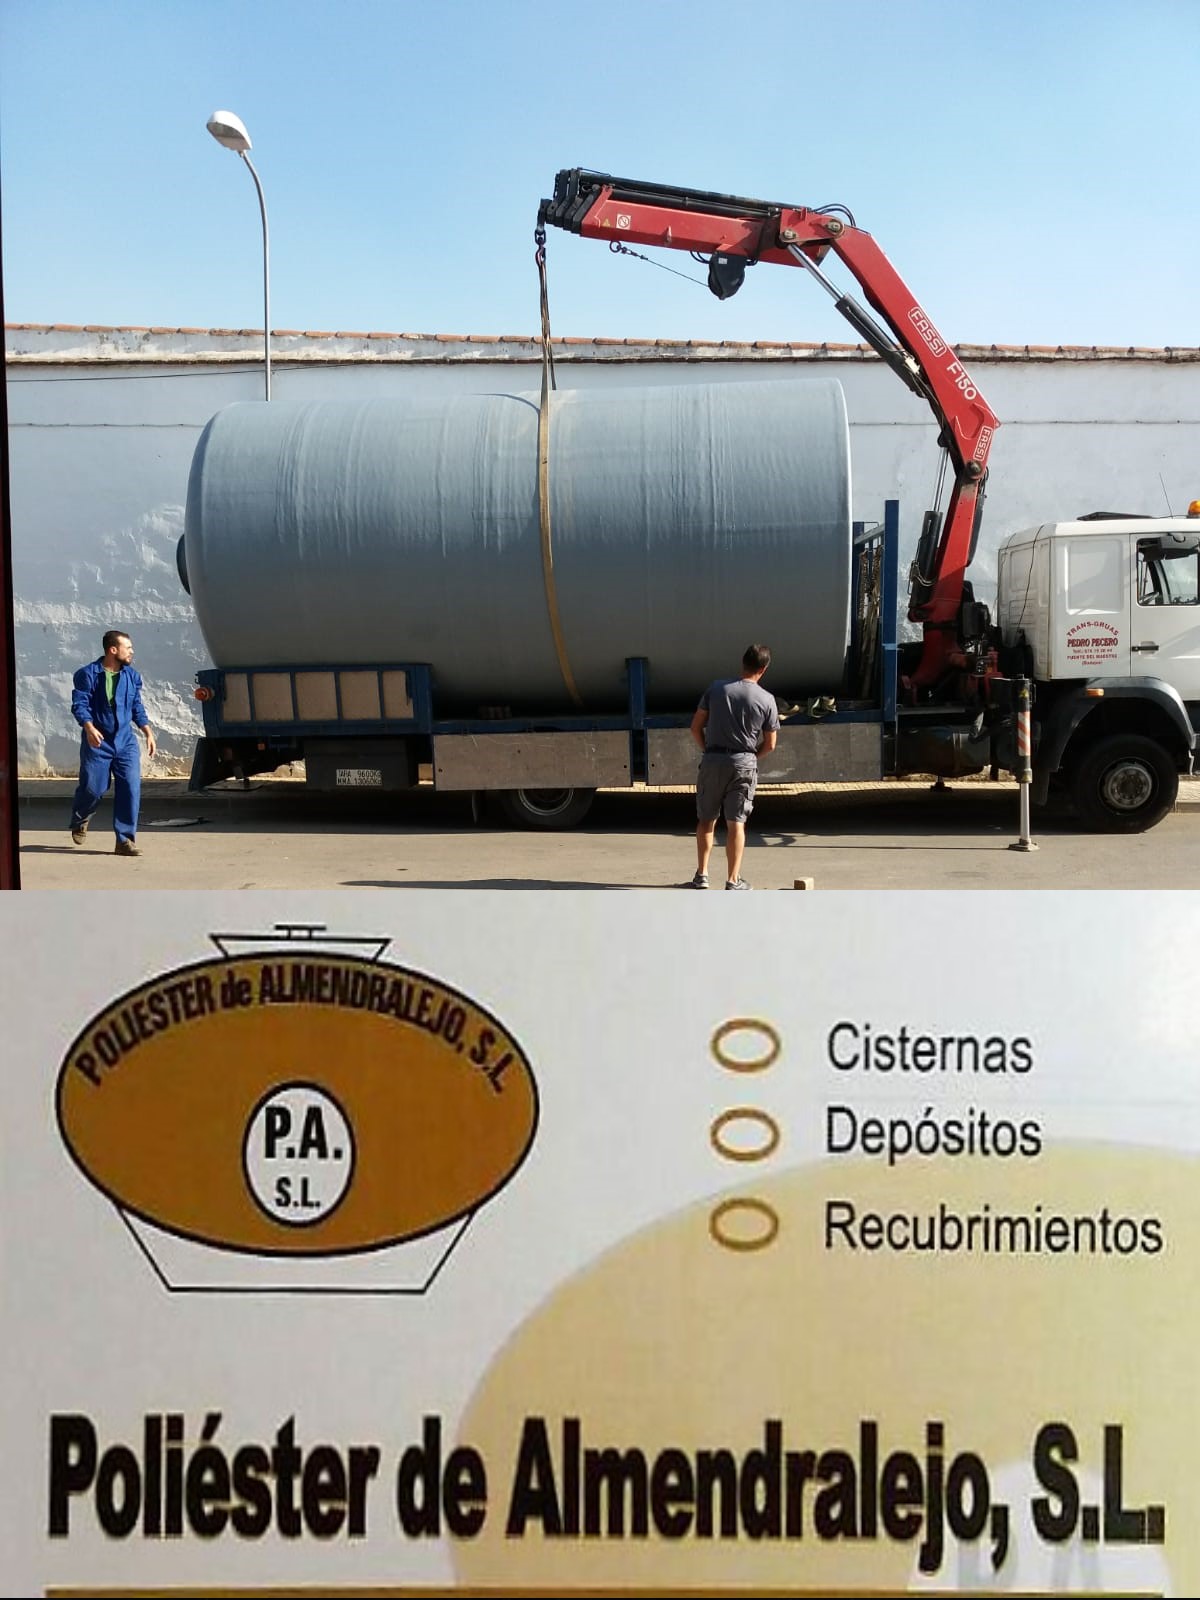 Depositos de Poliester en Extremadura Poliéster Almendralejo 